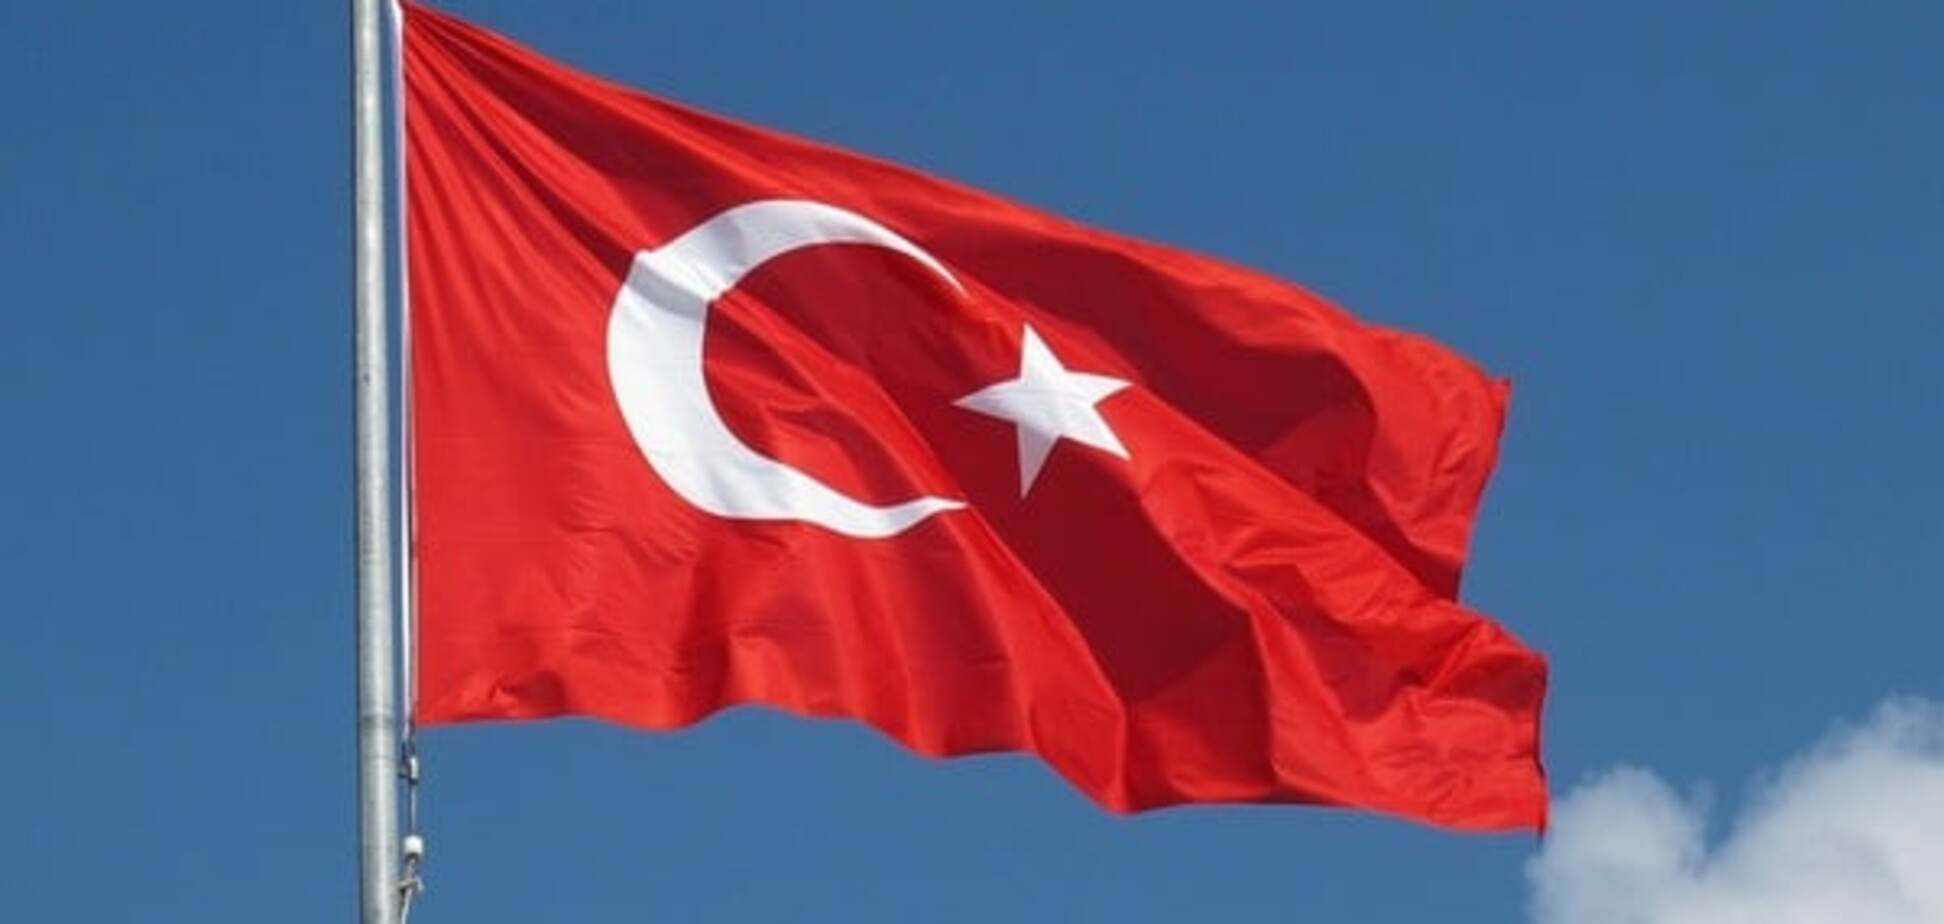 Біля урядової будівлі в Туреччині знайшли авто з вибухівкою